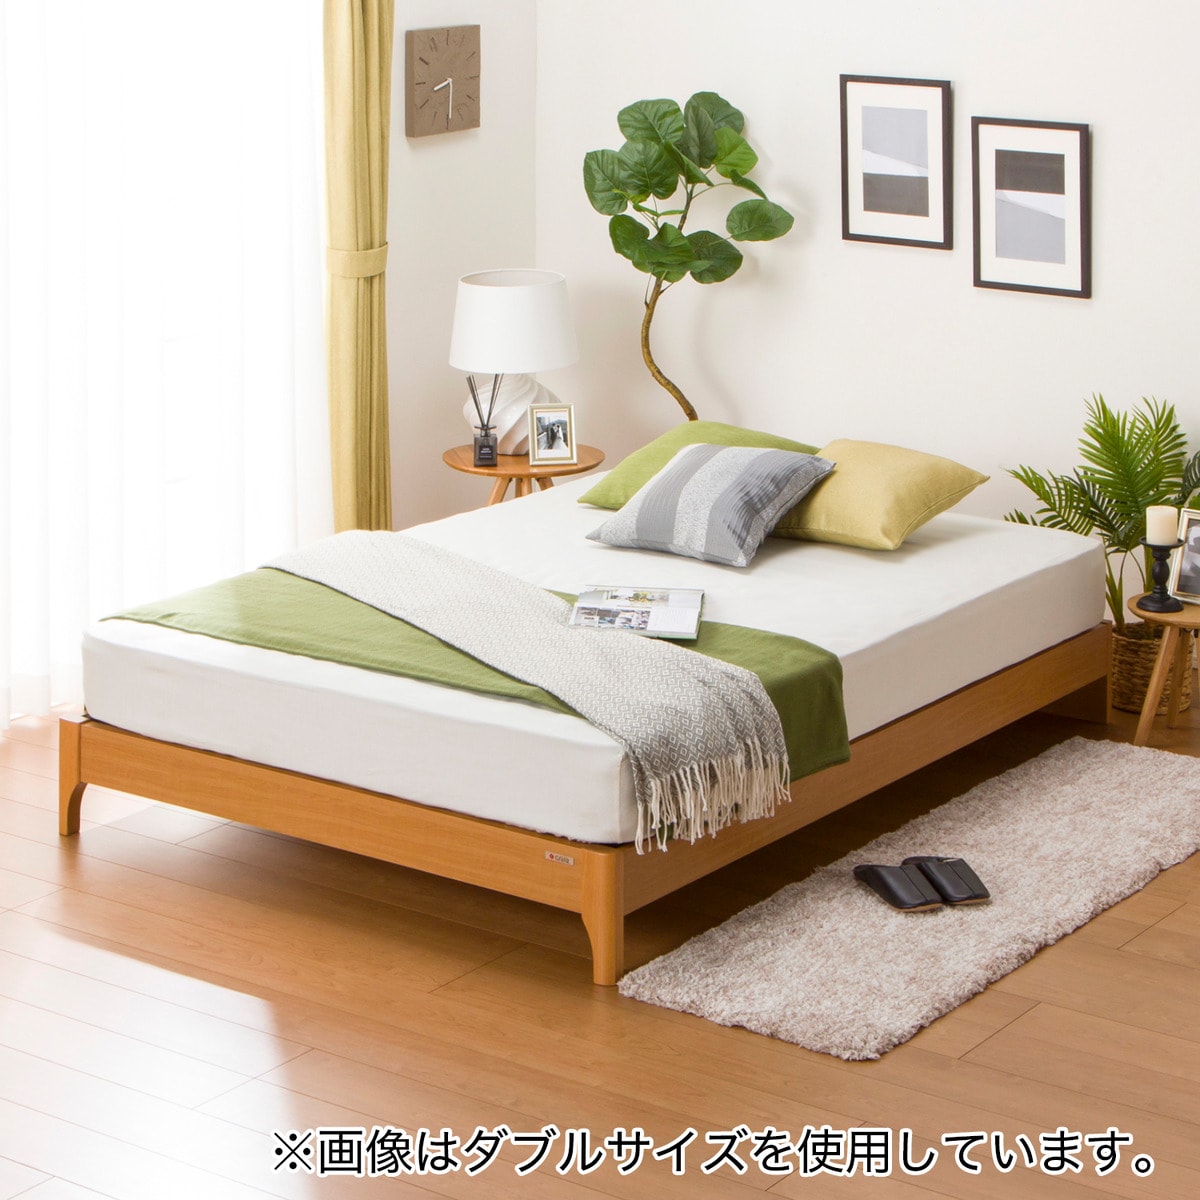 クイーンサイズ ベッド | ニトリネット【公式】 家具・インテリア通販